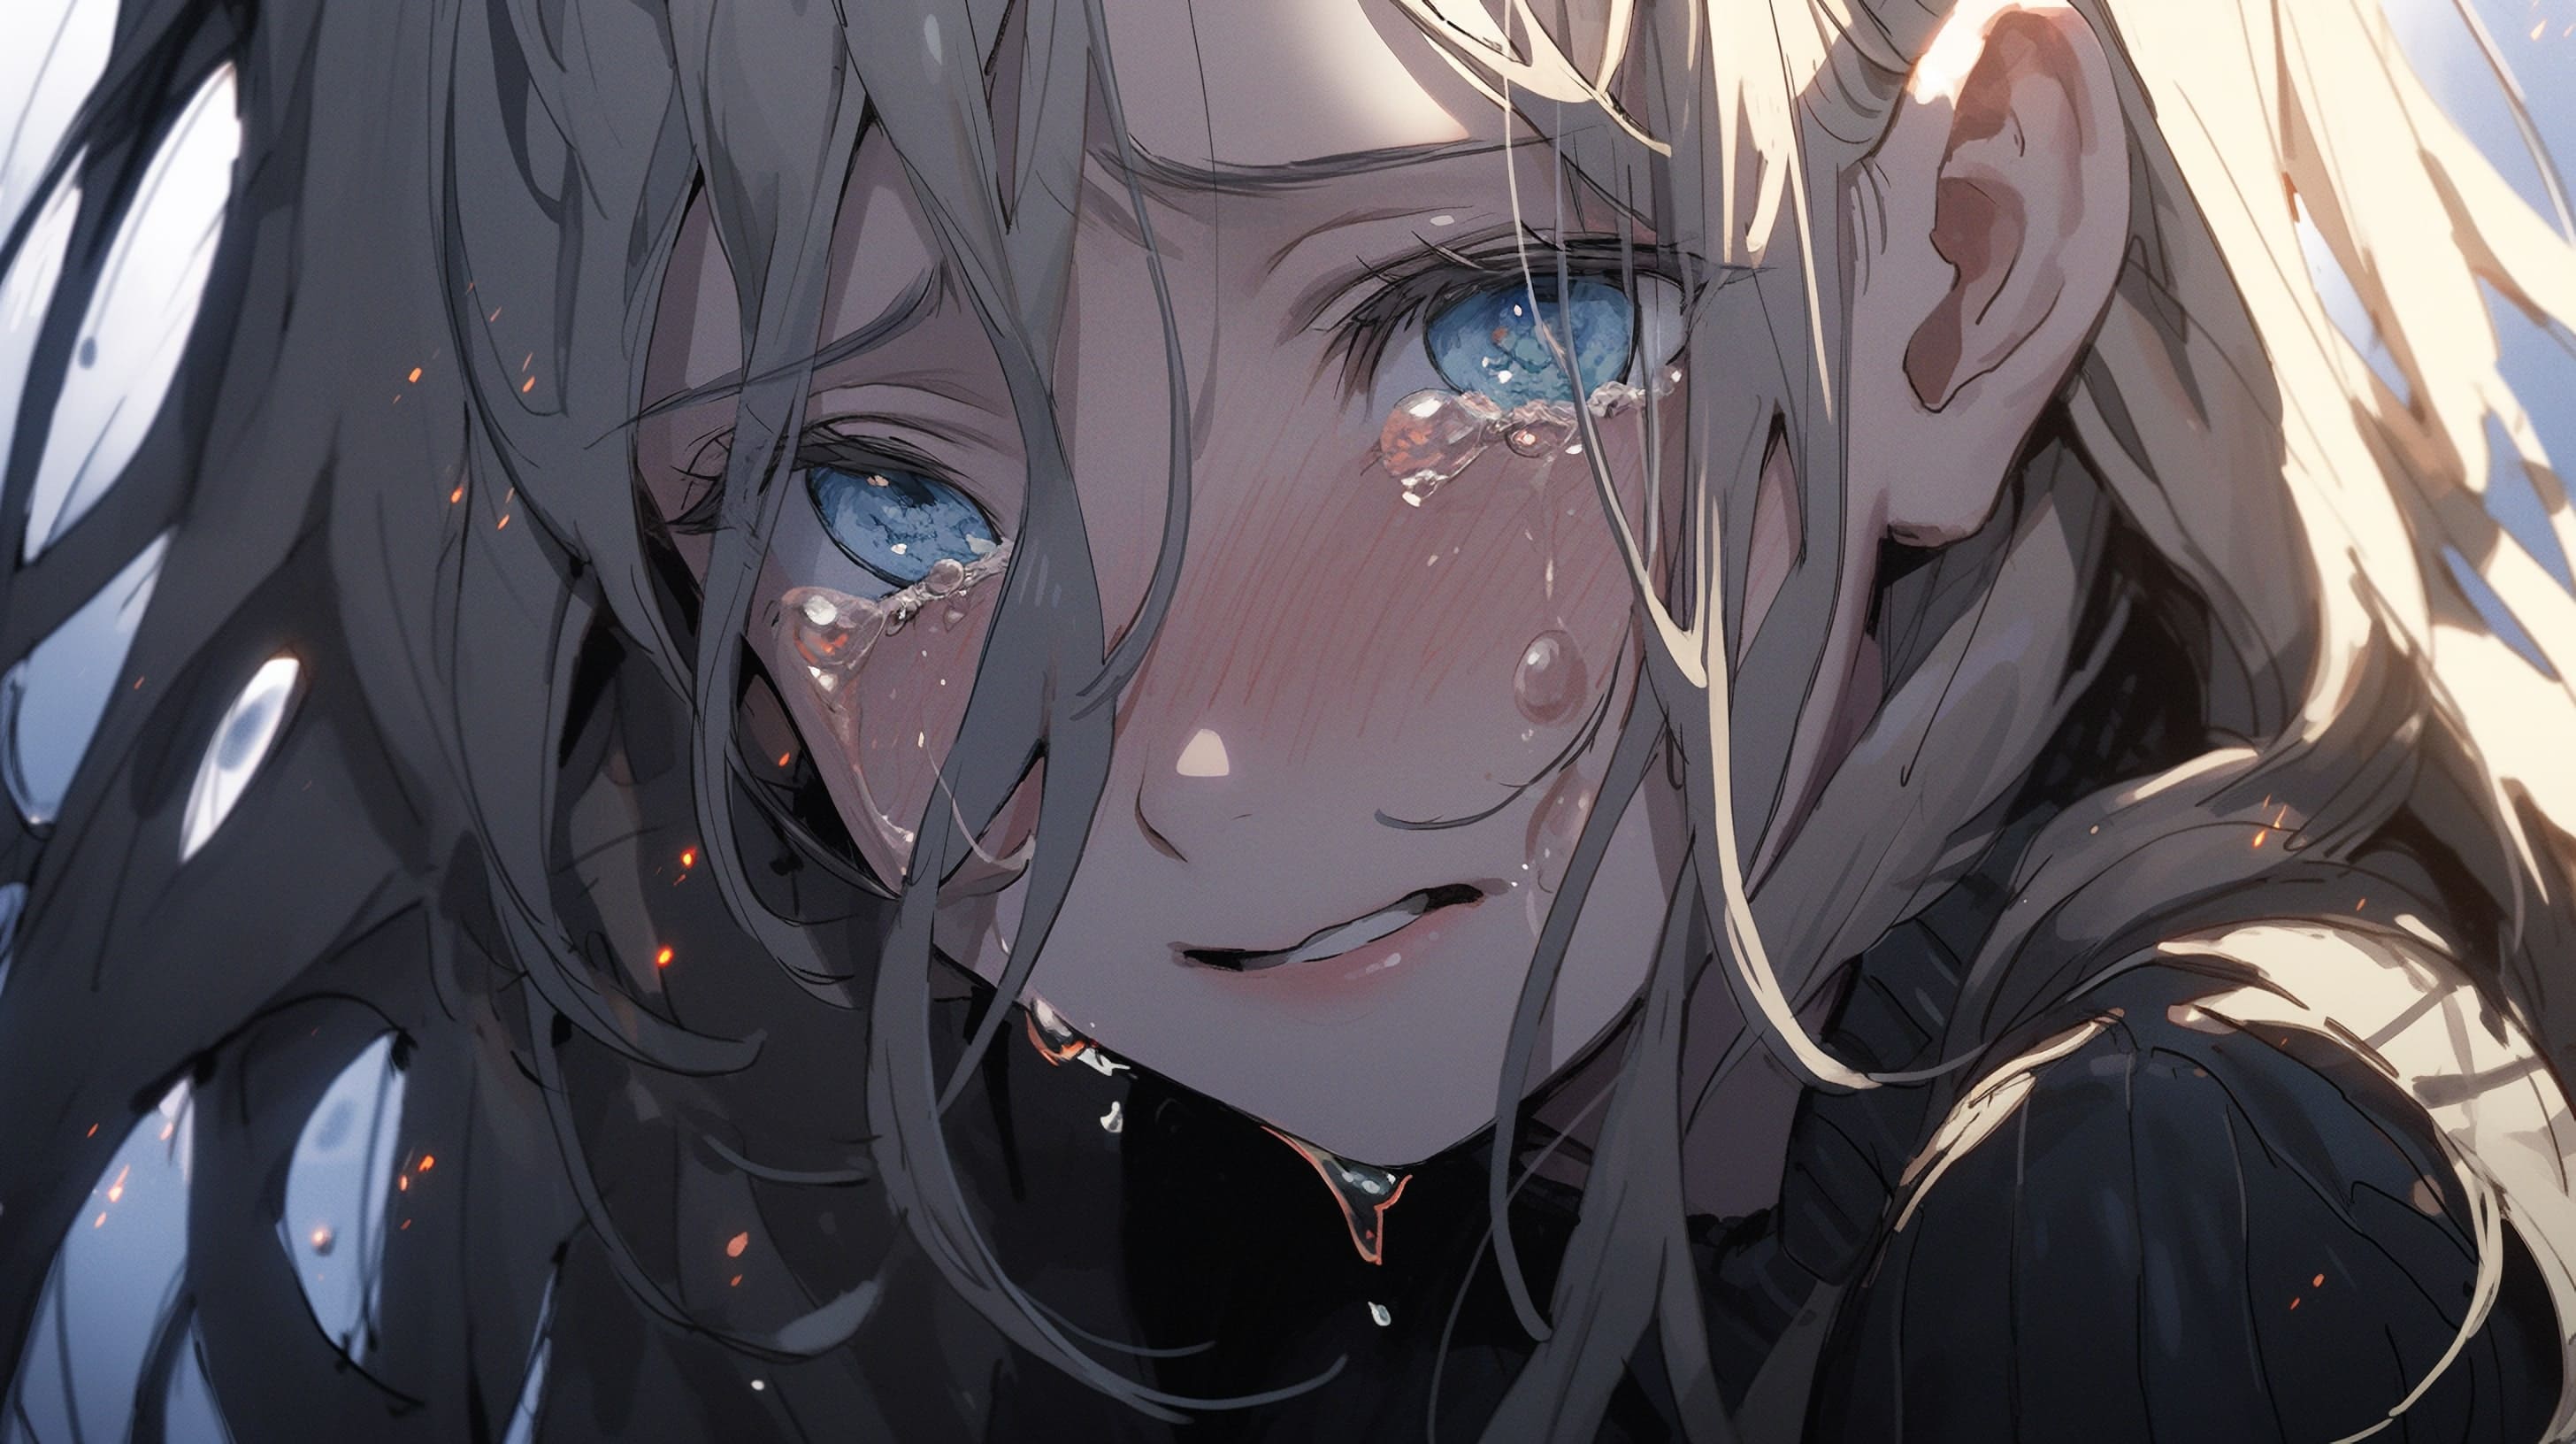 плачущая навзрыд девочка в стиле аниме